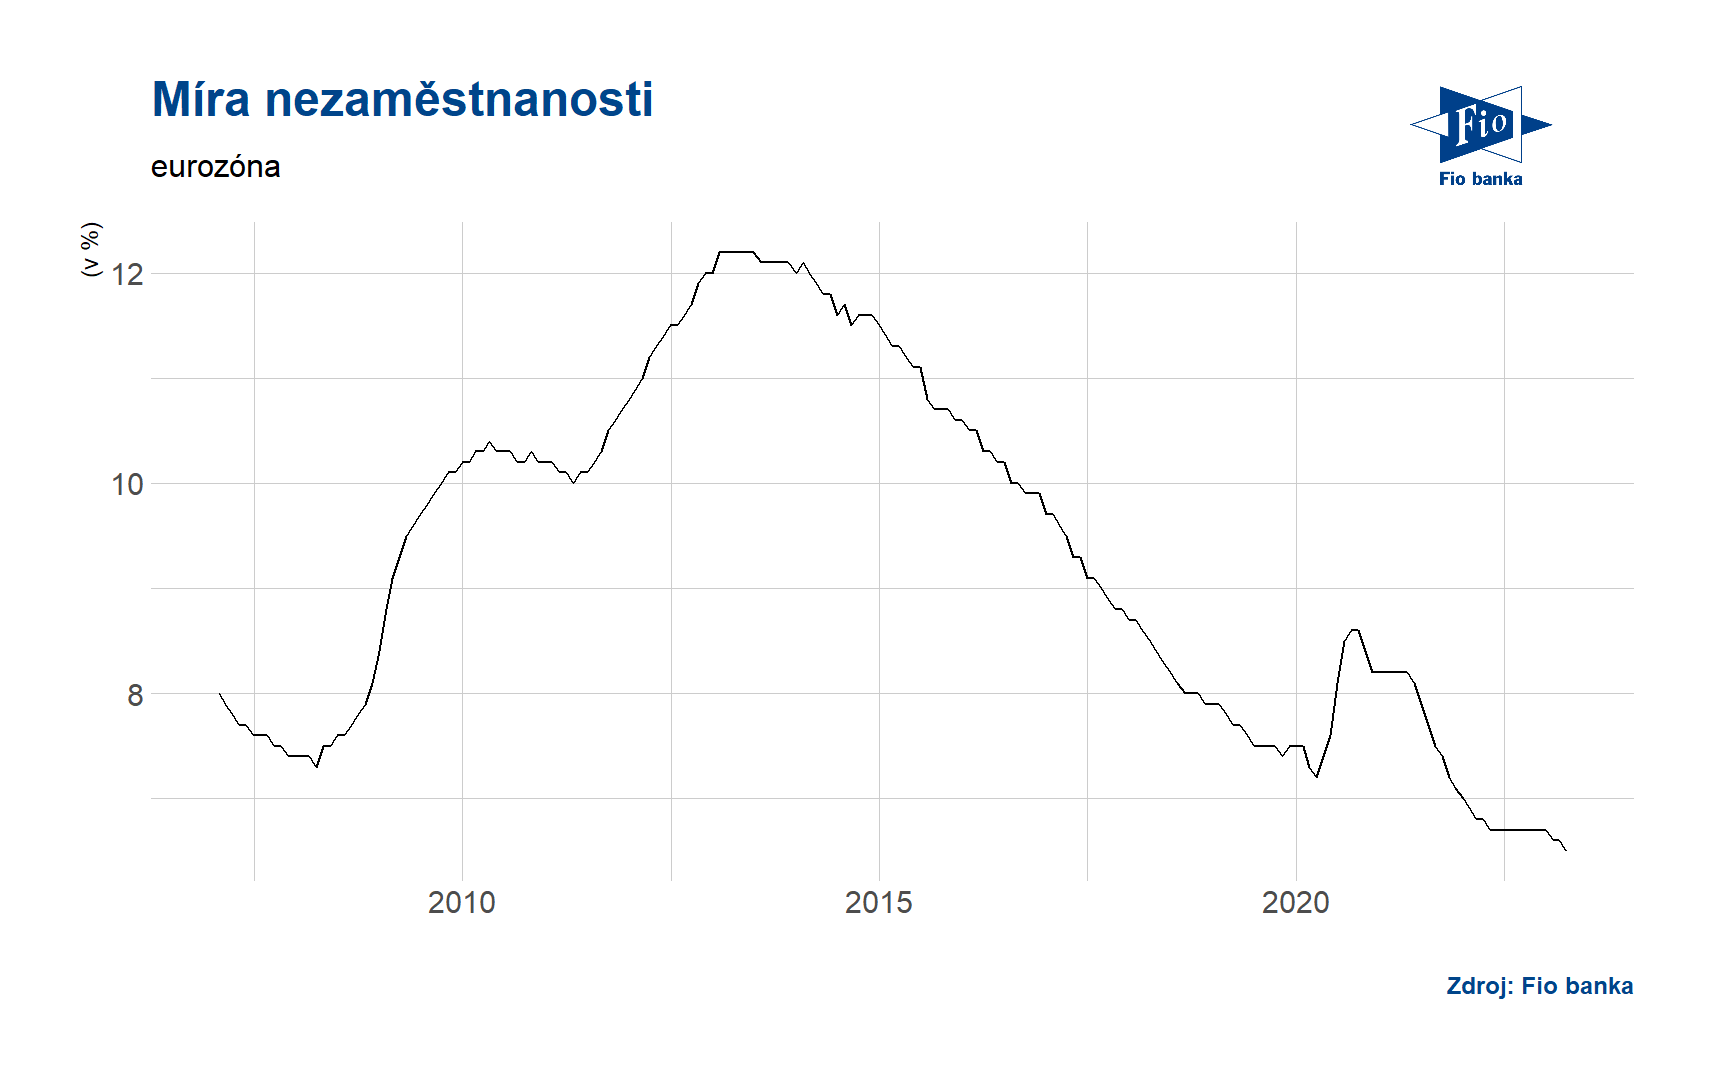 Míra nezaměstnanosti - eurozóna